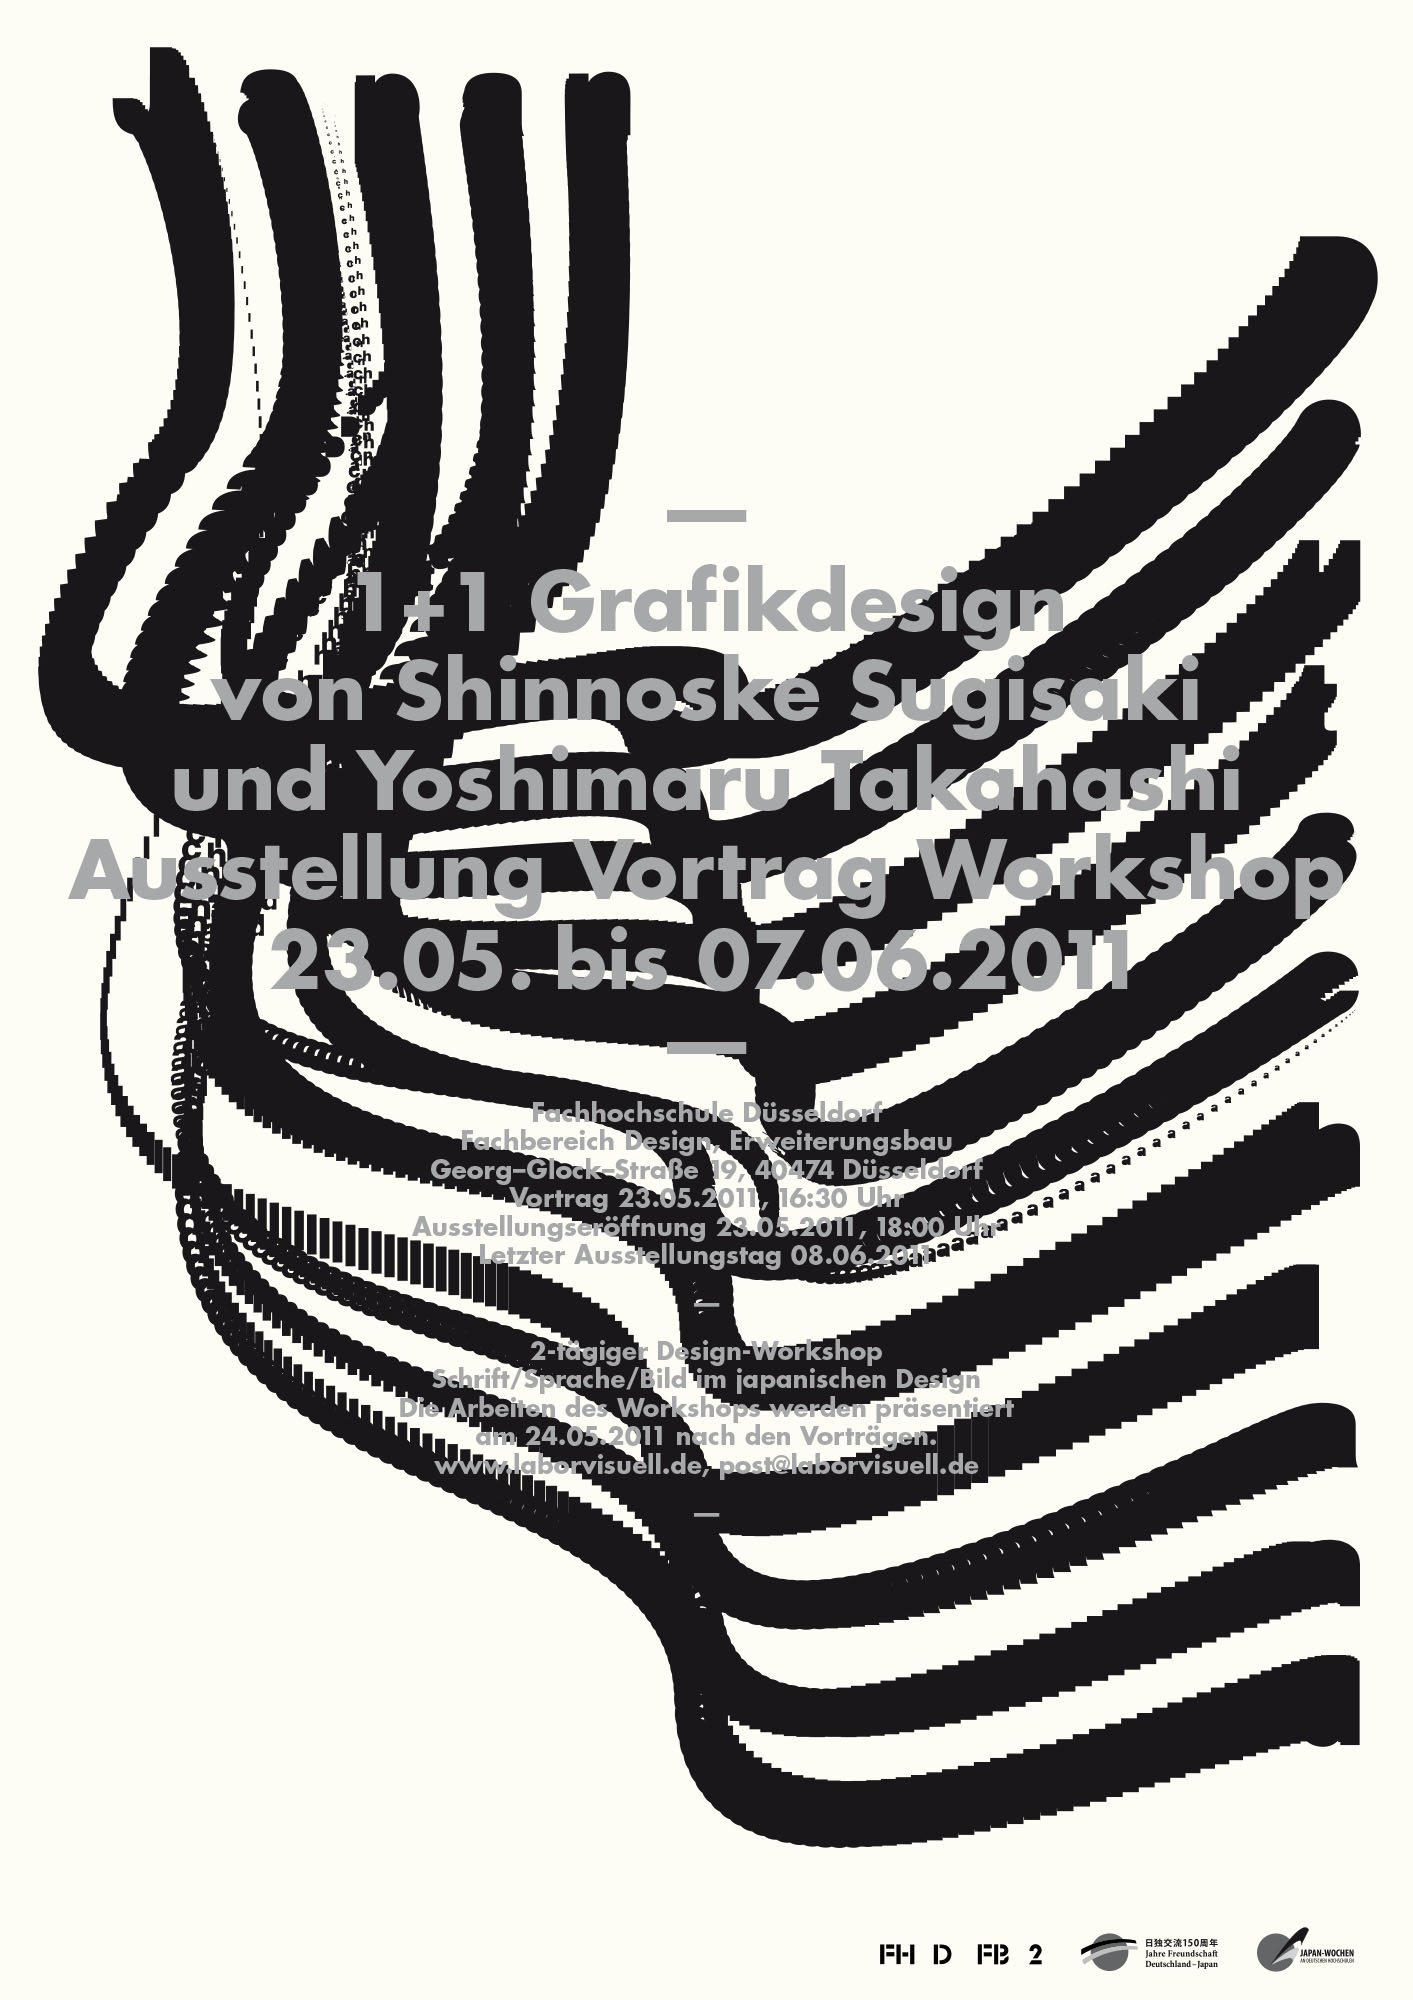 Gestaltet: Tim Sluiters, Betreut: Holger Jacobs, Victor Malsy, Philipp Teufel, Titel: 1+1 Grafikdesign, Jahr: 2011